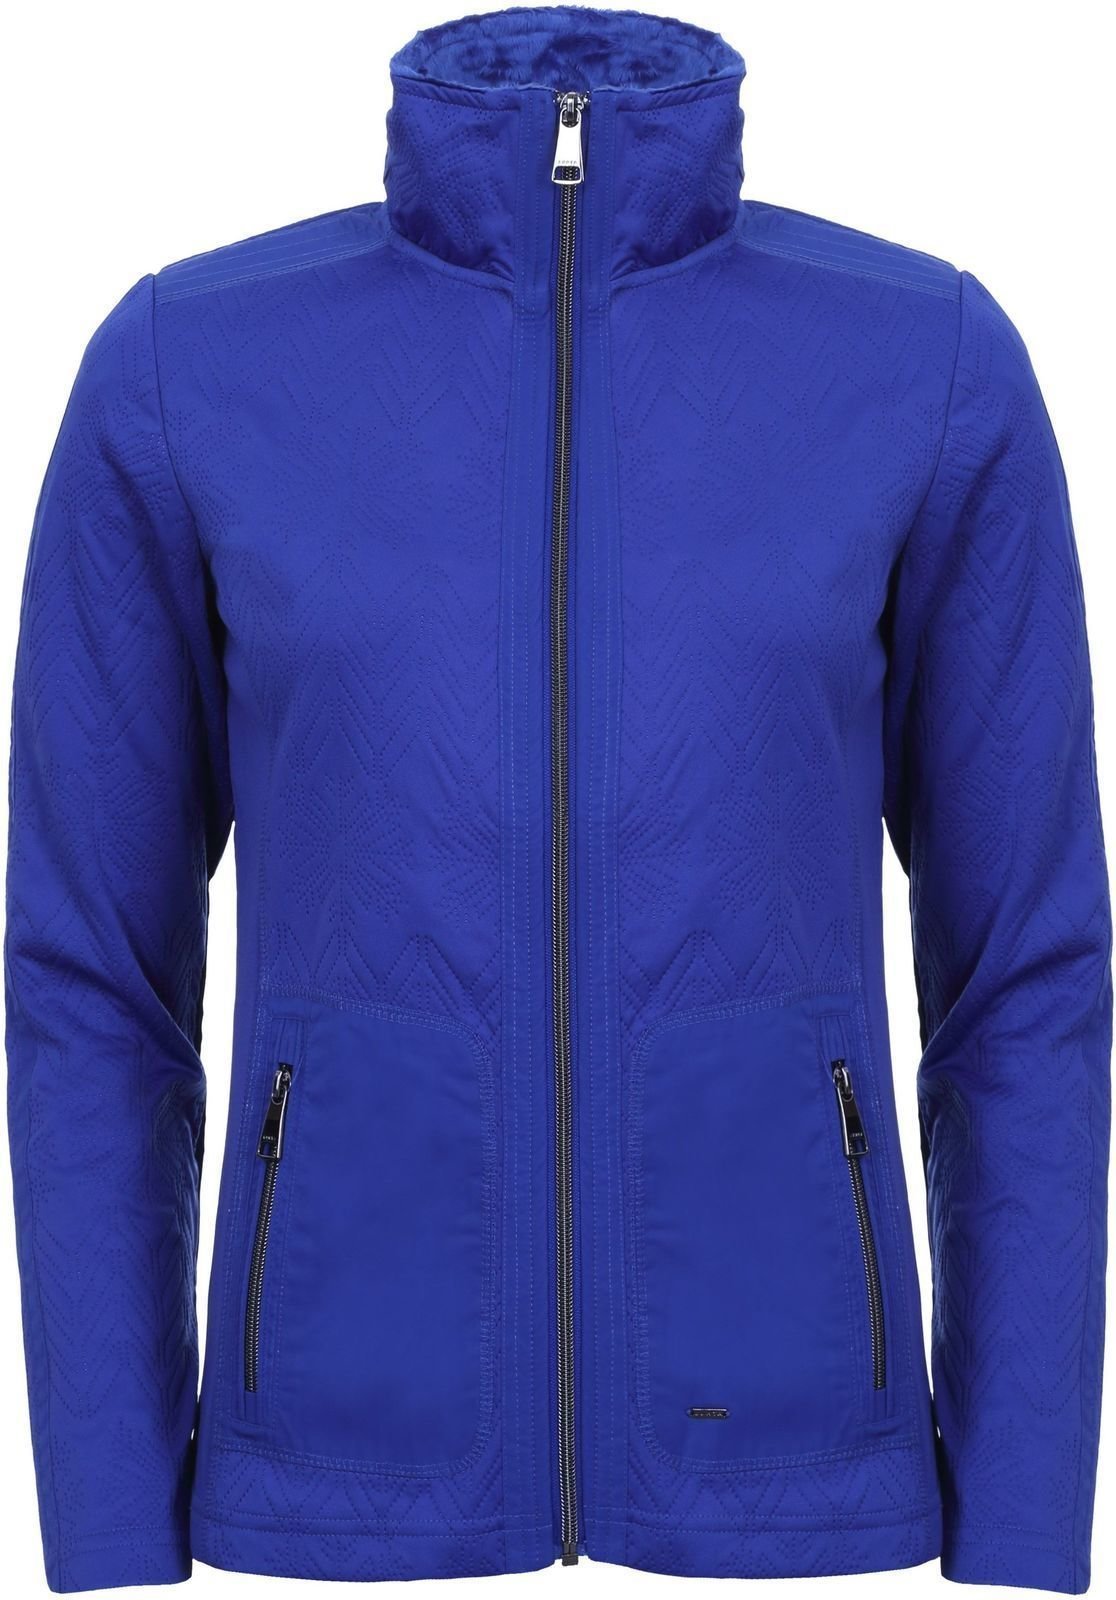 T-shirt/casaco com capuz para esqui Luhta Haarla Womens Sweater Royal Blue M Ponte